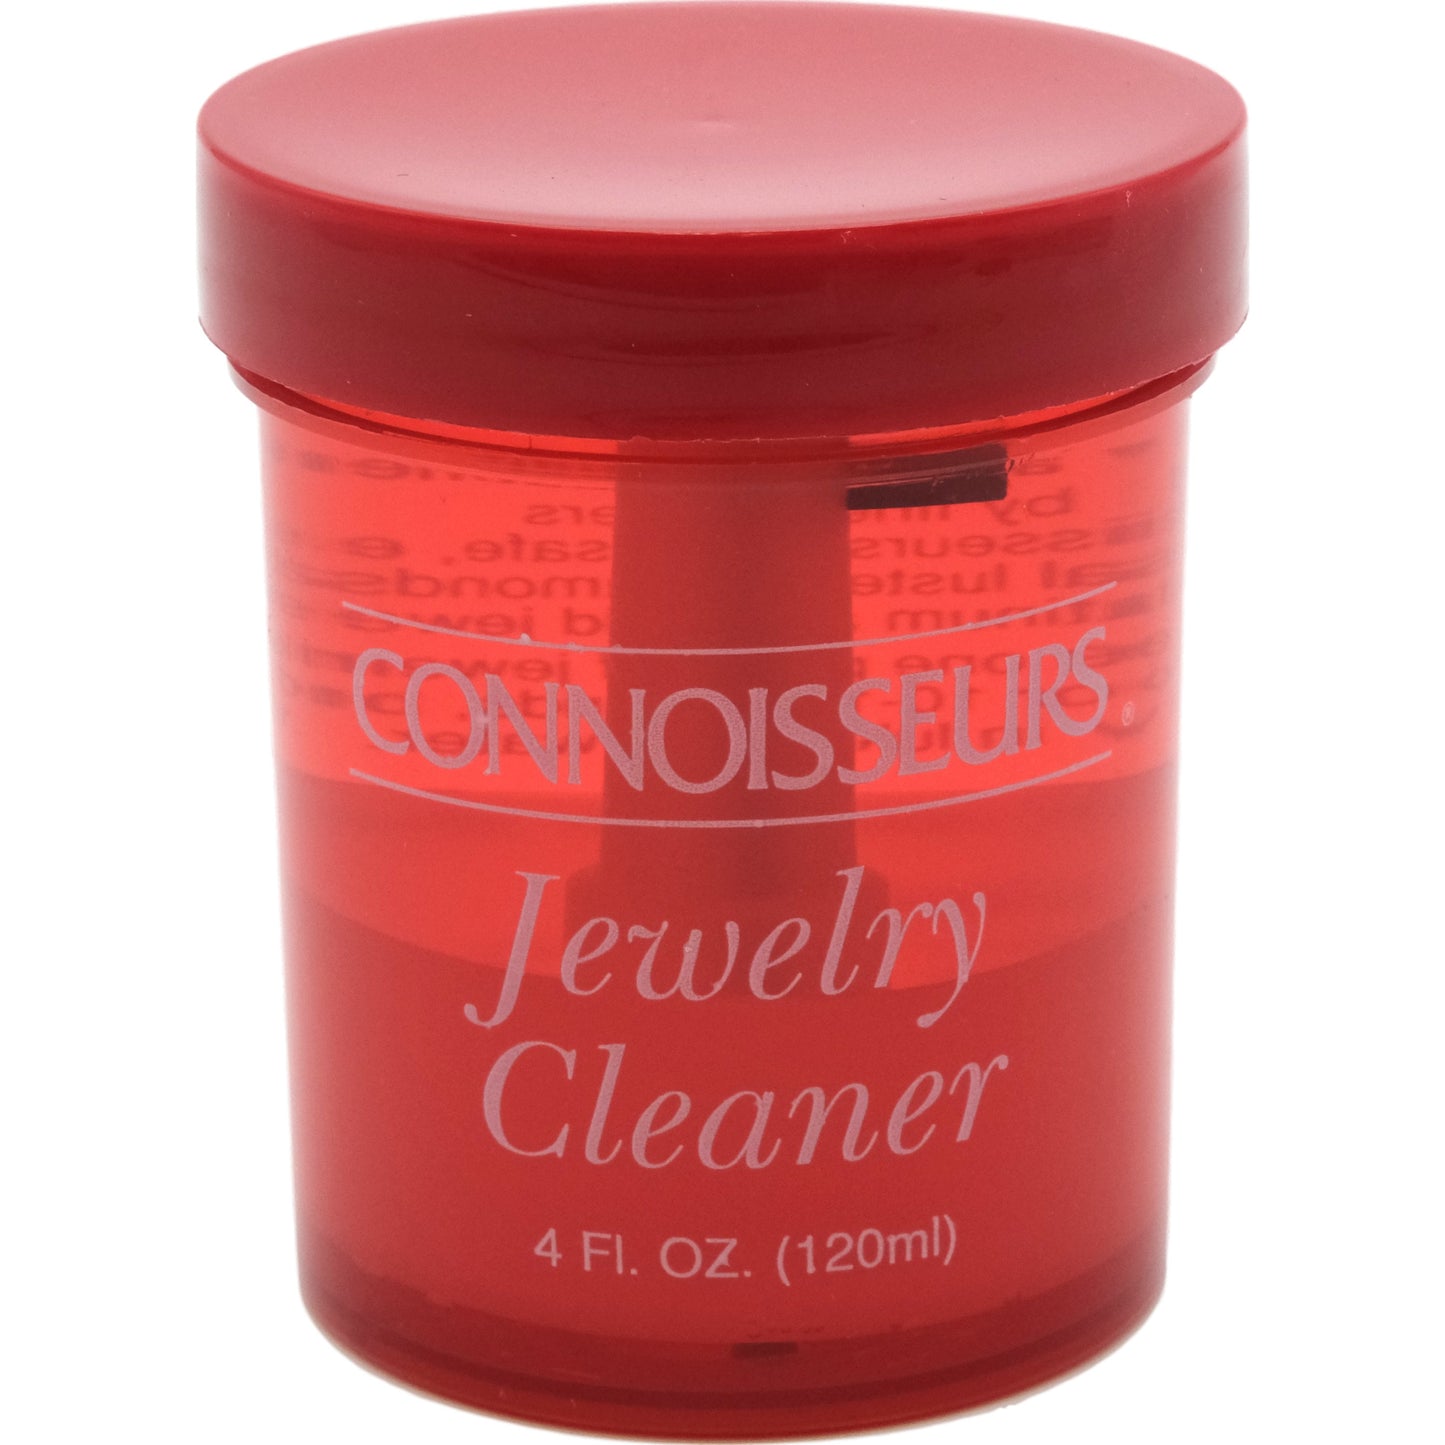 Connoisseurs Jewelry Cleaner 48 fl oz 12Pcs